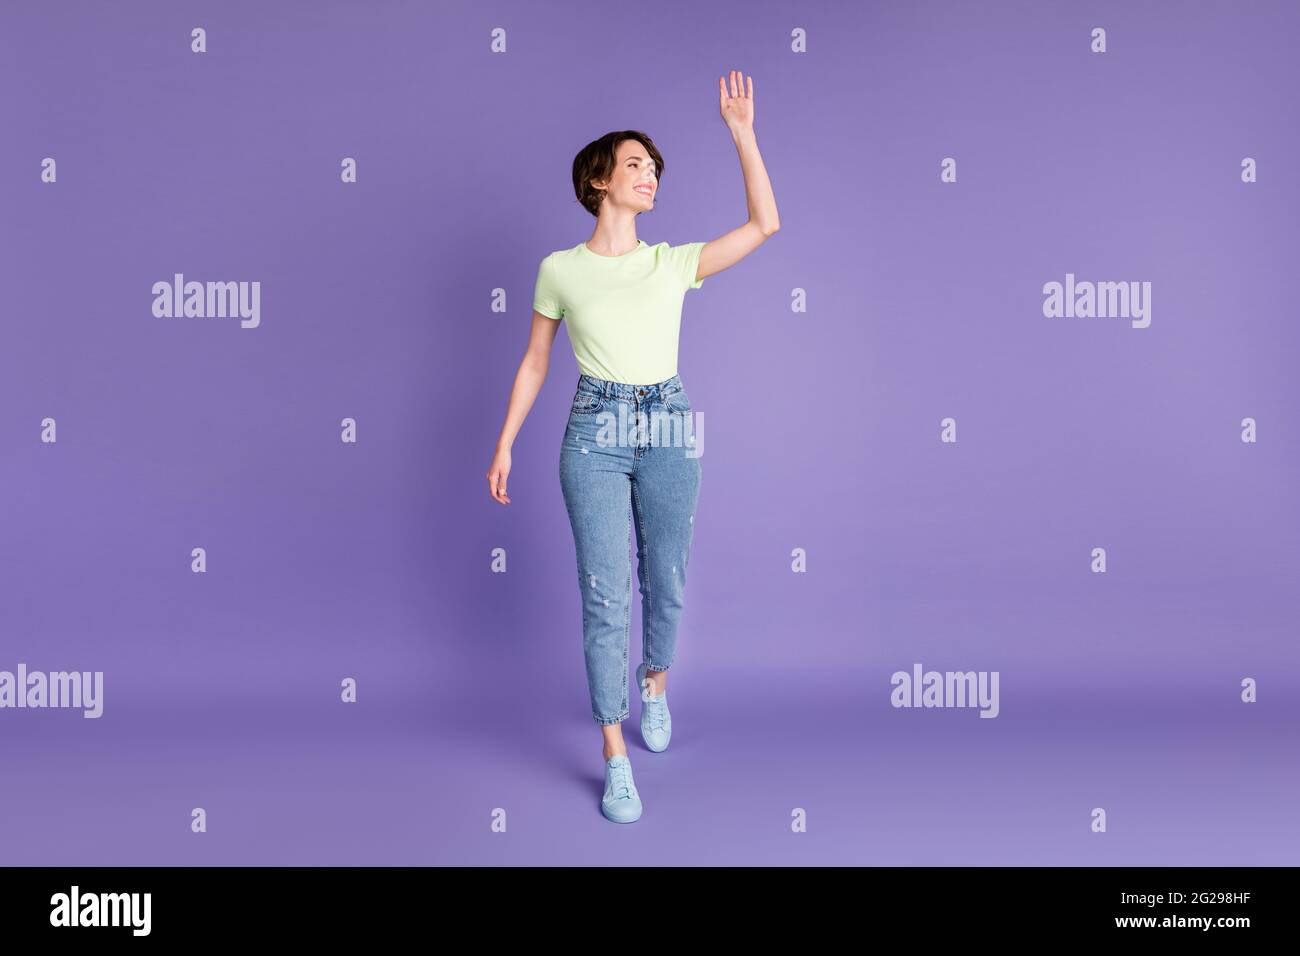 Vue sur toute la longueur du corps de fille attrayante de marche joyeuse salut bonjour isolé sur fond violet vif violet couleur violet Banque D'Images